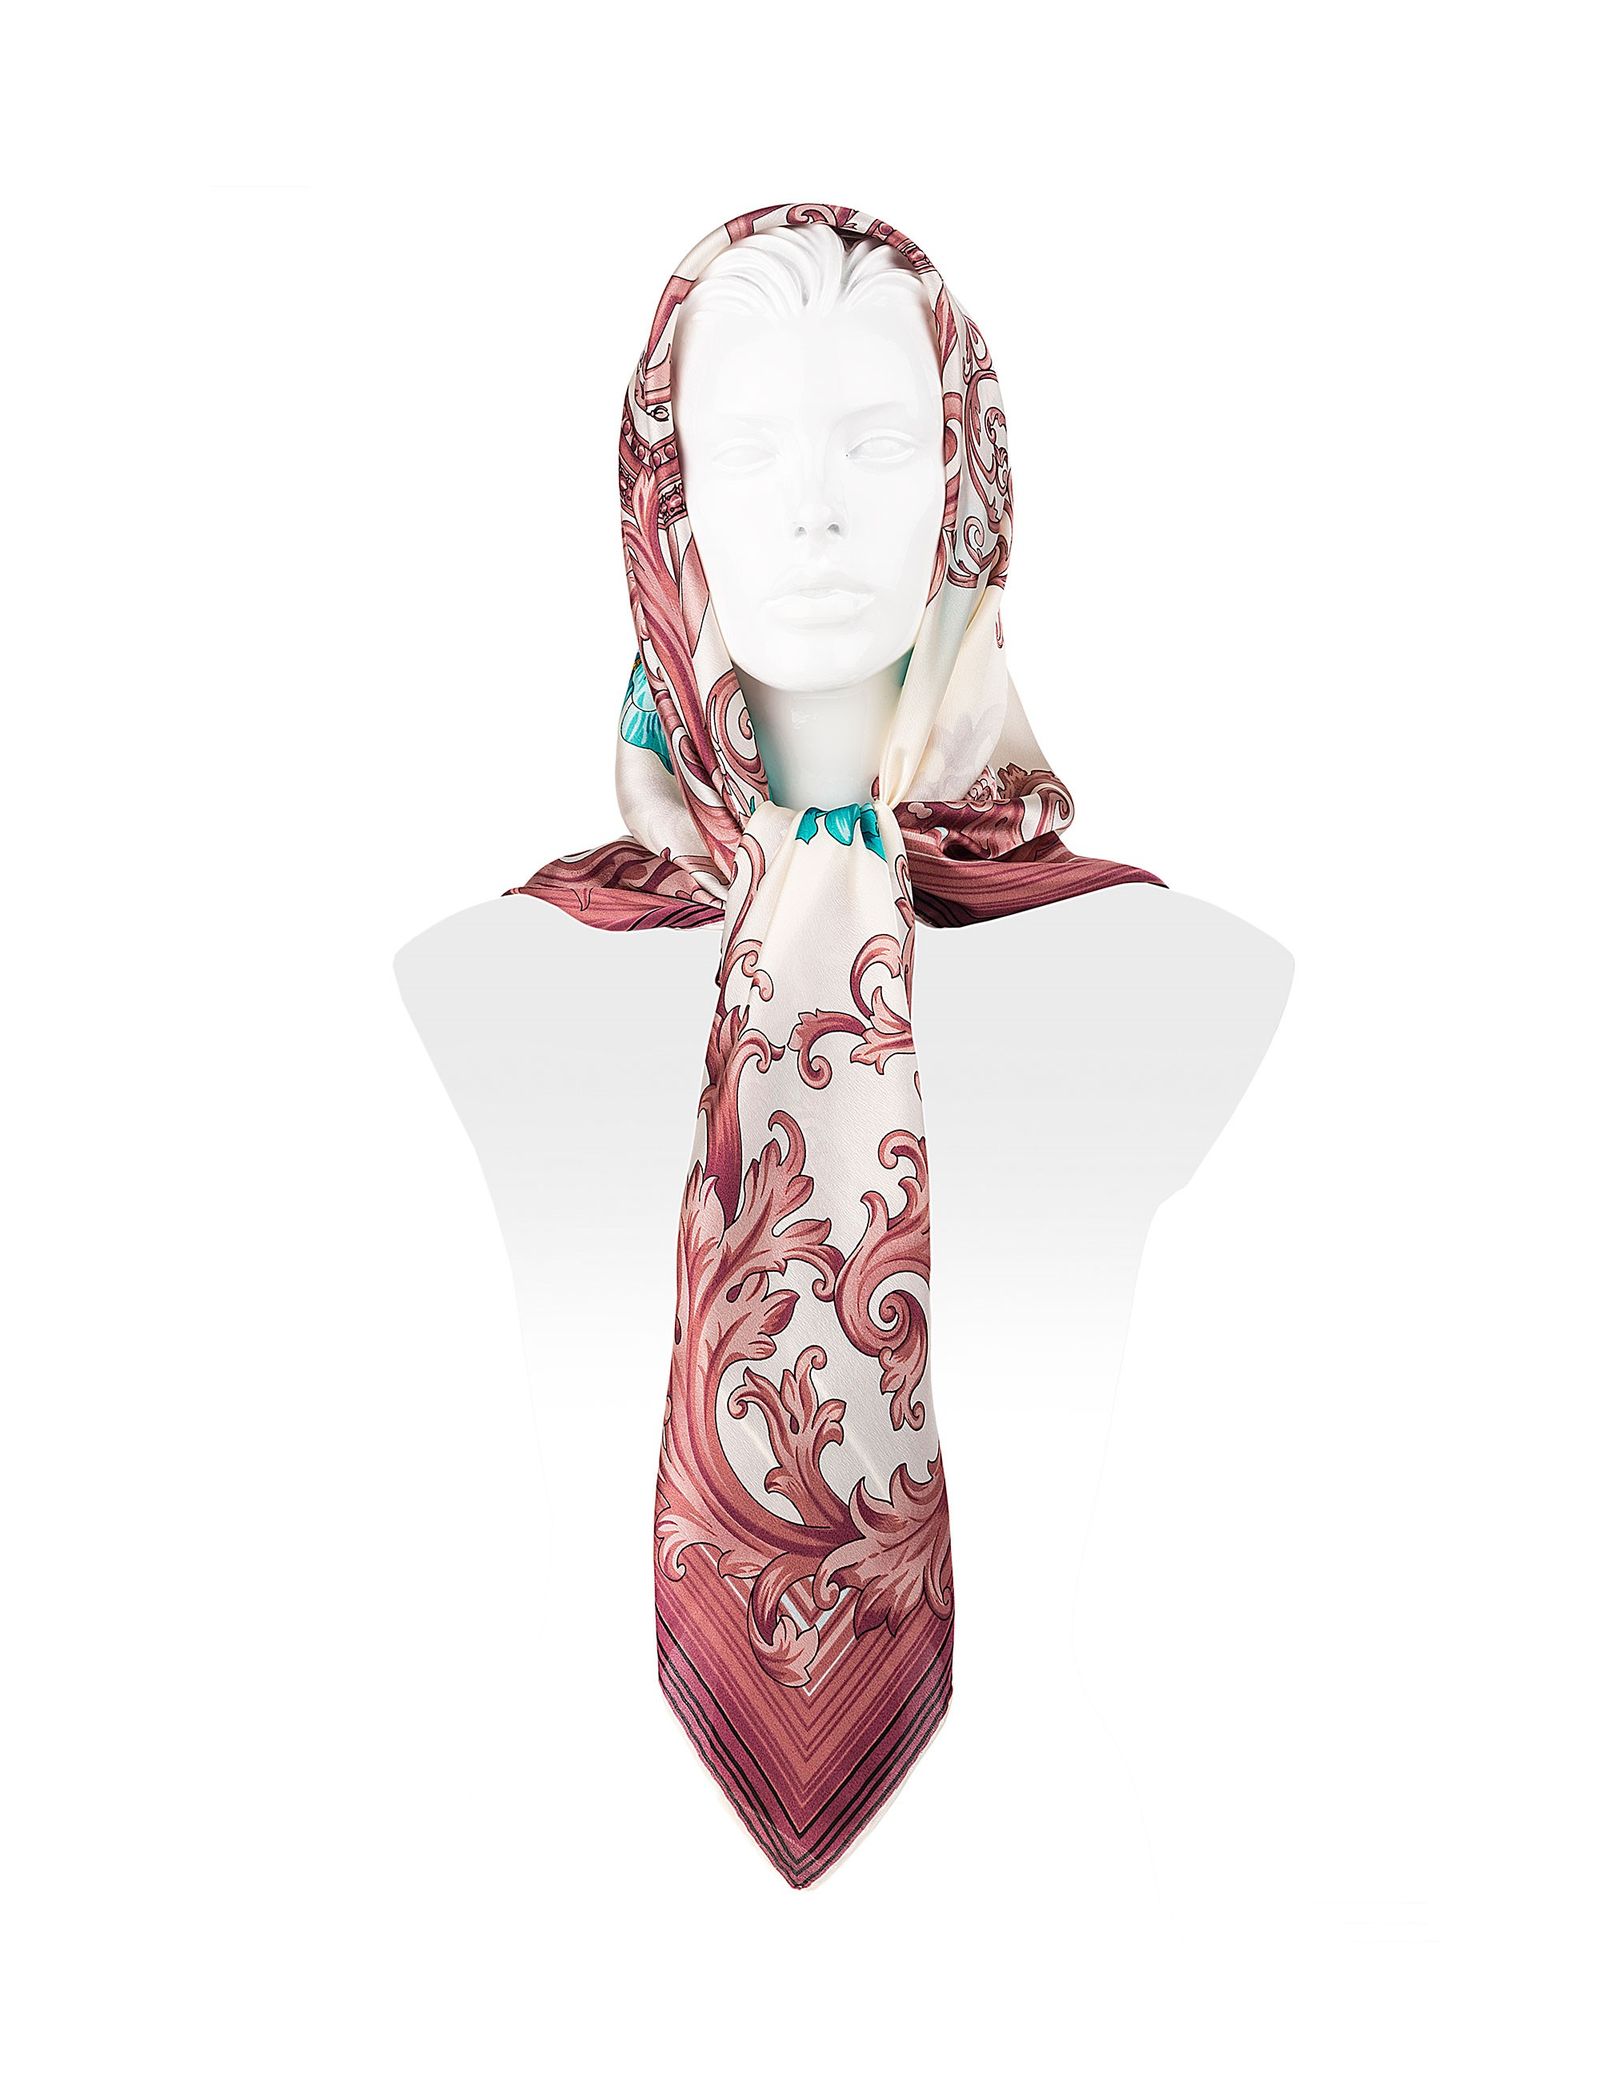 روسری ابریشمی زنانه - رزتی - سفيد و صورتي - 4